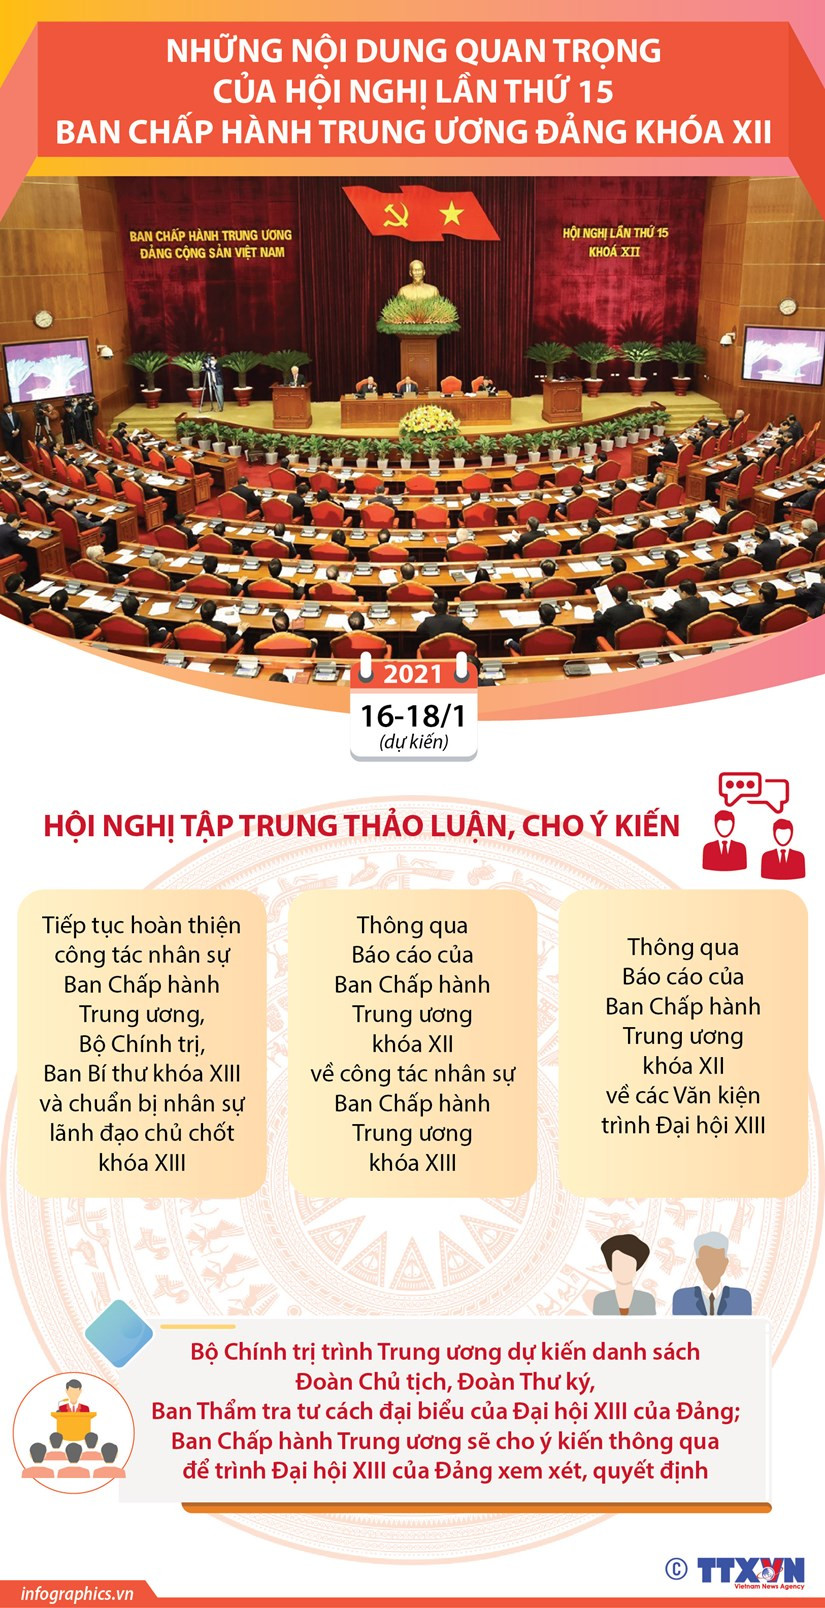 (Infographic) Những nội dung quan trọng của Hội nghị lần thứ 15 Ban Chấp hành Trung ương Đảng